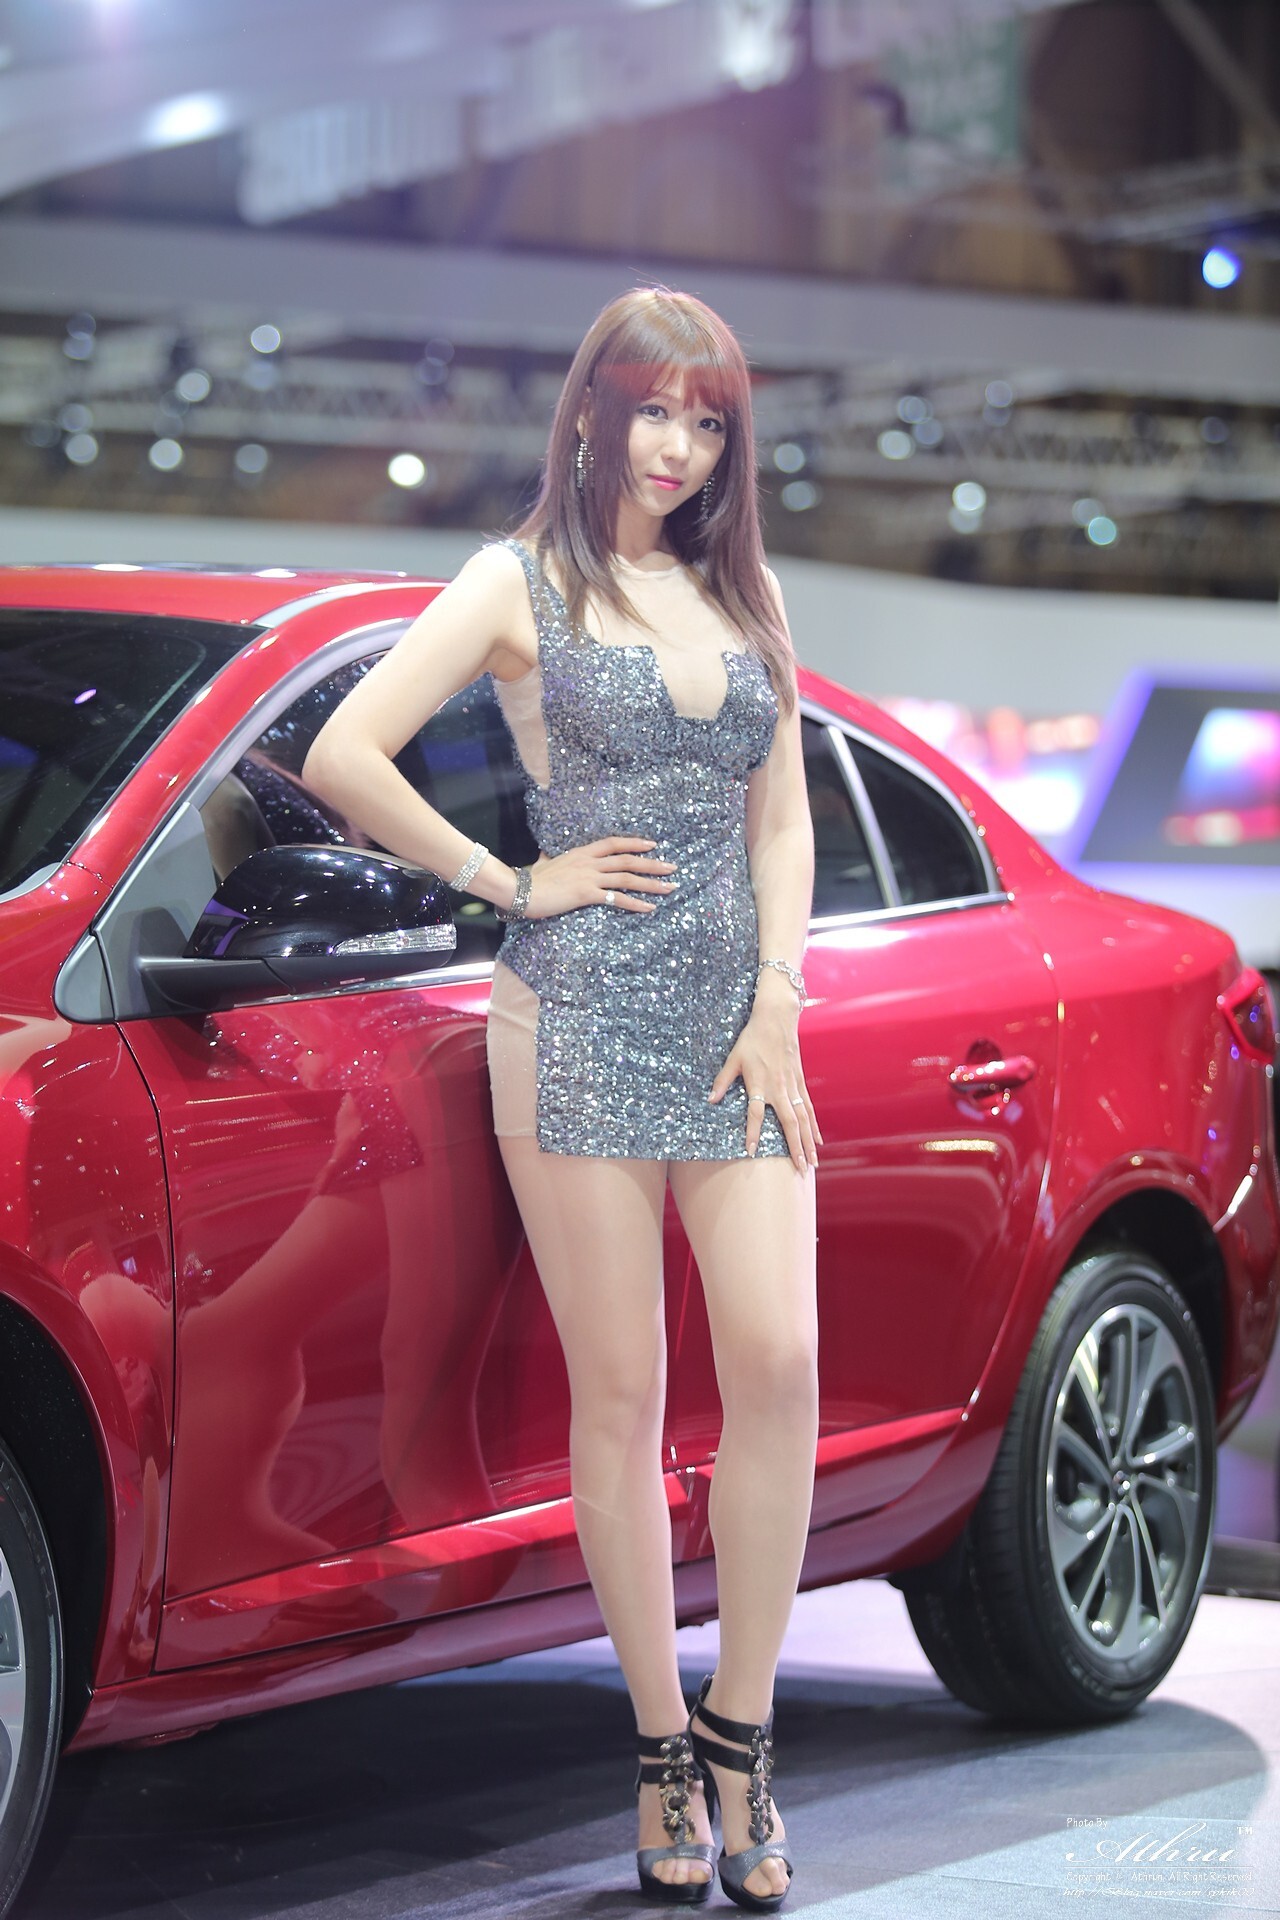 韩国车模女神李恩慧 2014年釜山国际车展图集打包 3